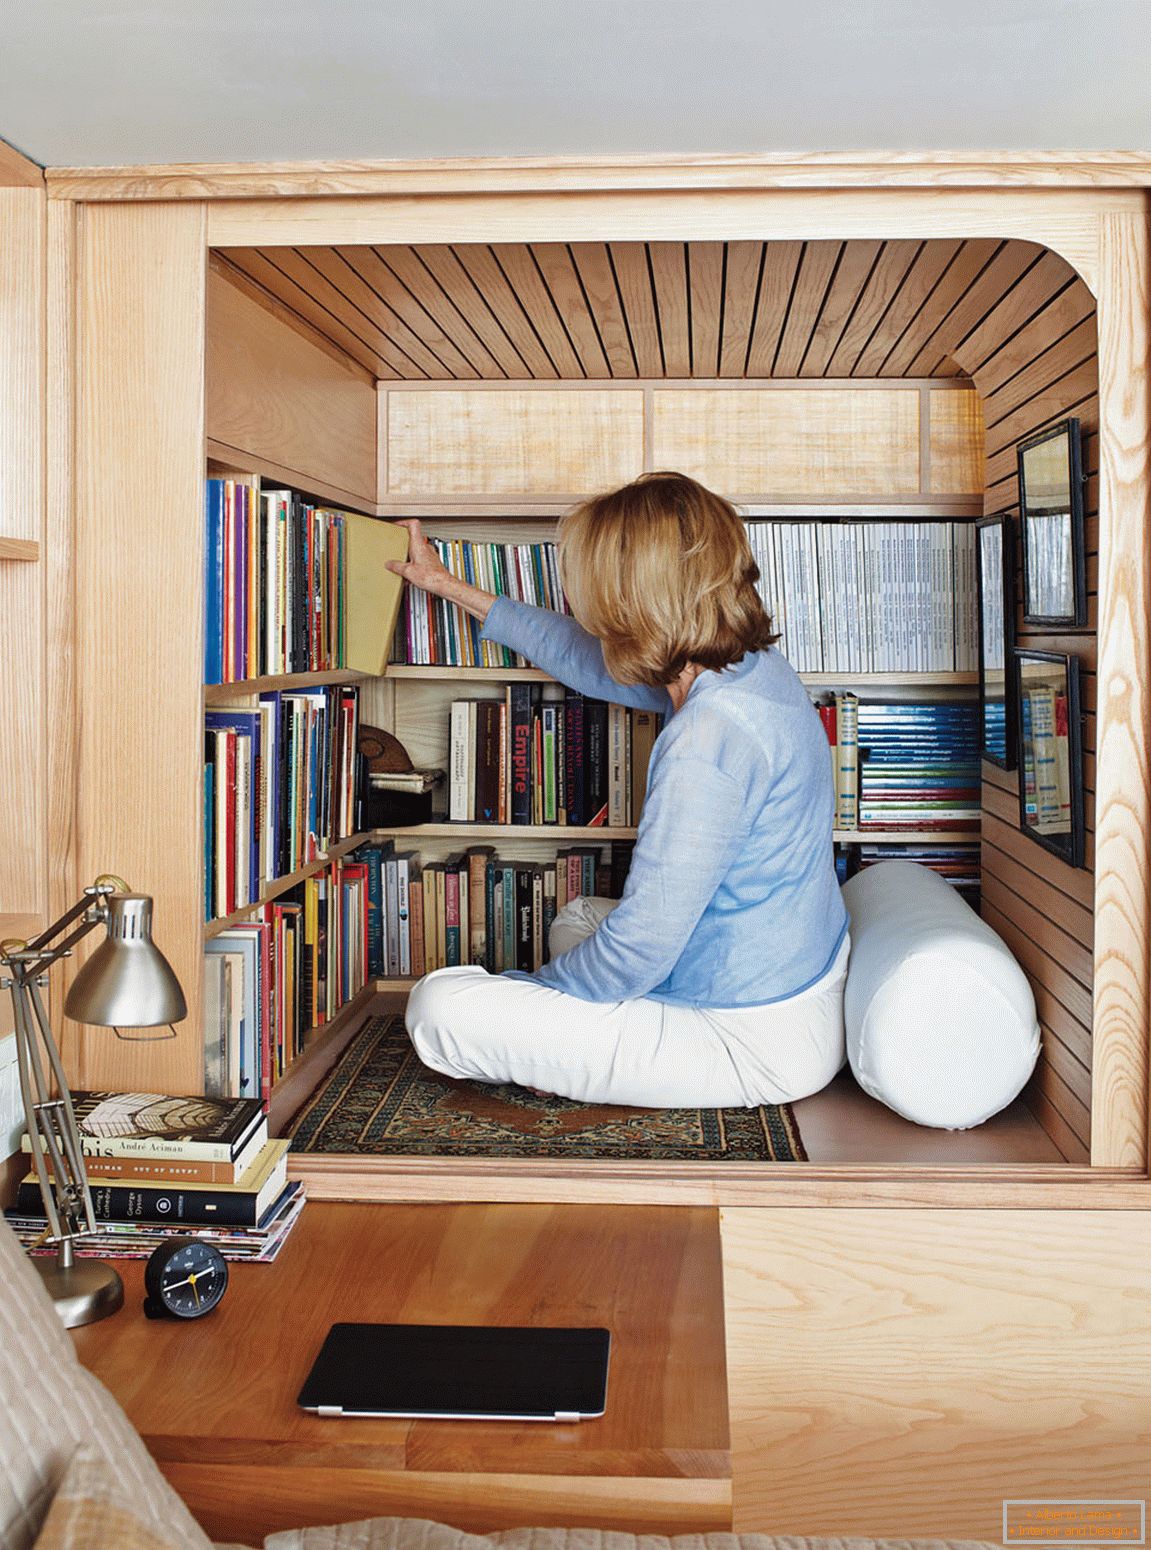 Bibliothek in einer kleinen zweistöckigen Wohnung